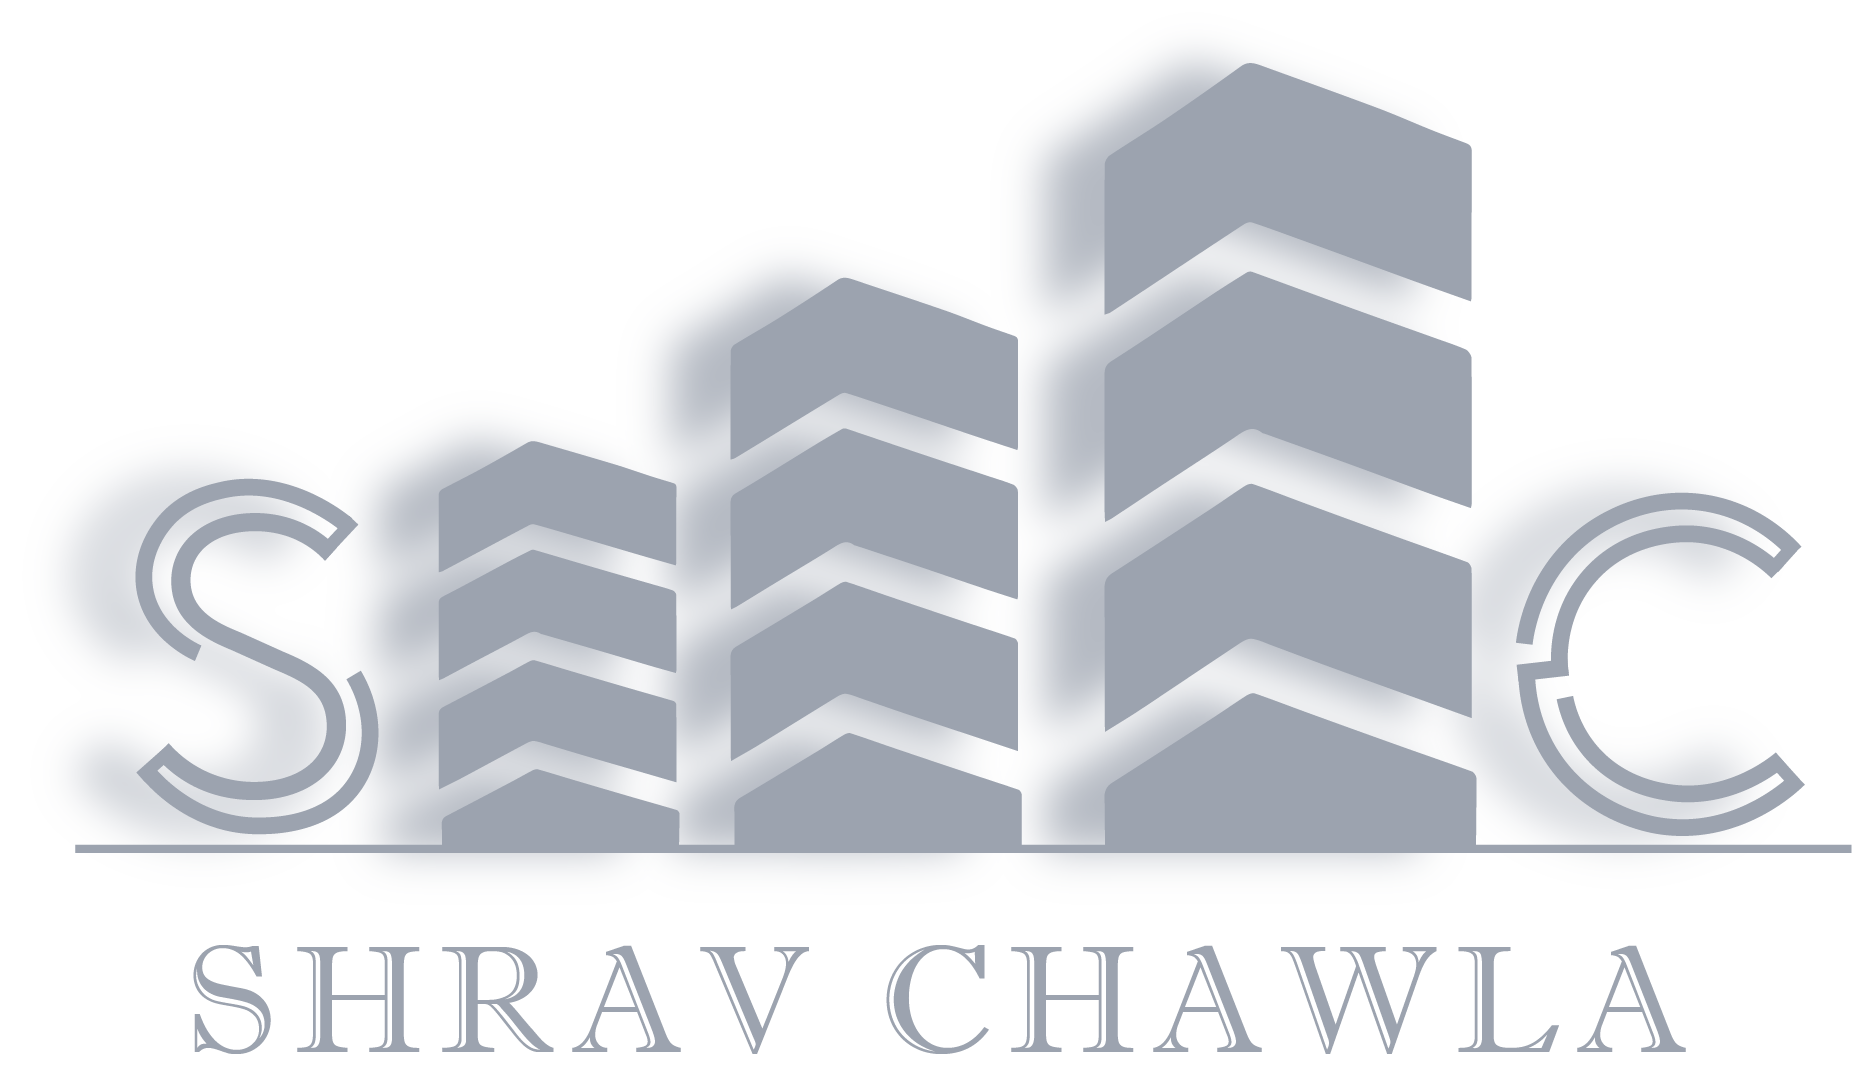 Shrav chawla logo